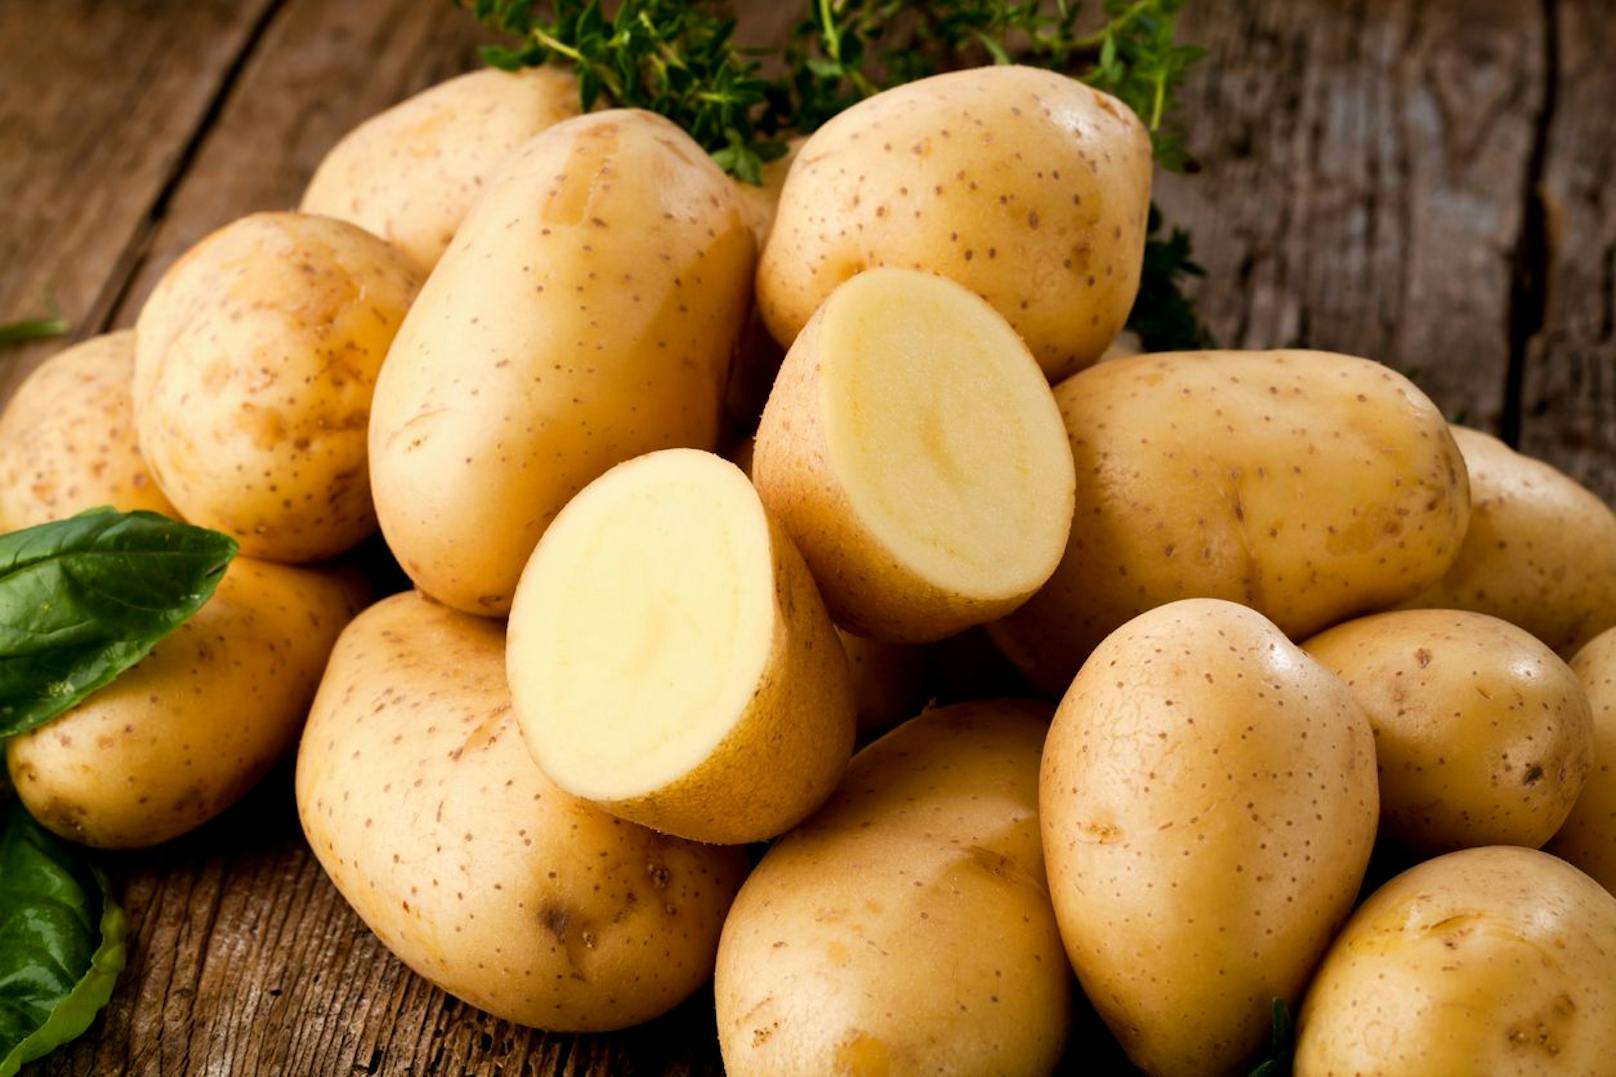 Alte Kartoffeln wirken gut gegen stark verschmutzte oder eingebrannte Töpfe und Pfannen. Mit ein wenig Salz kann eine halbierte Kartoffel dank der enthaltenen Stärke Verfärbungen entfernen. 